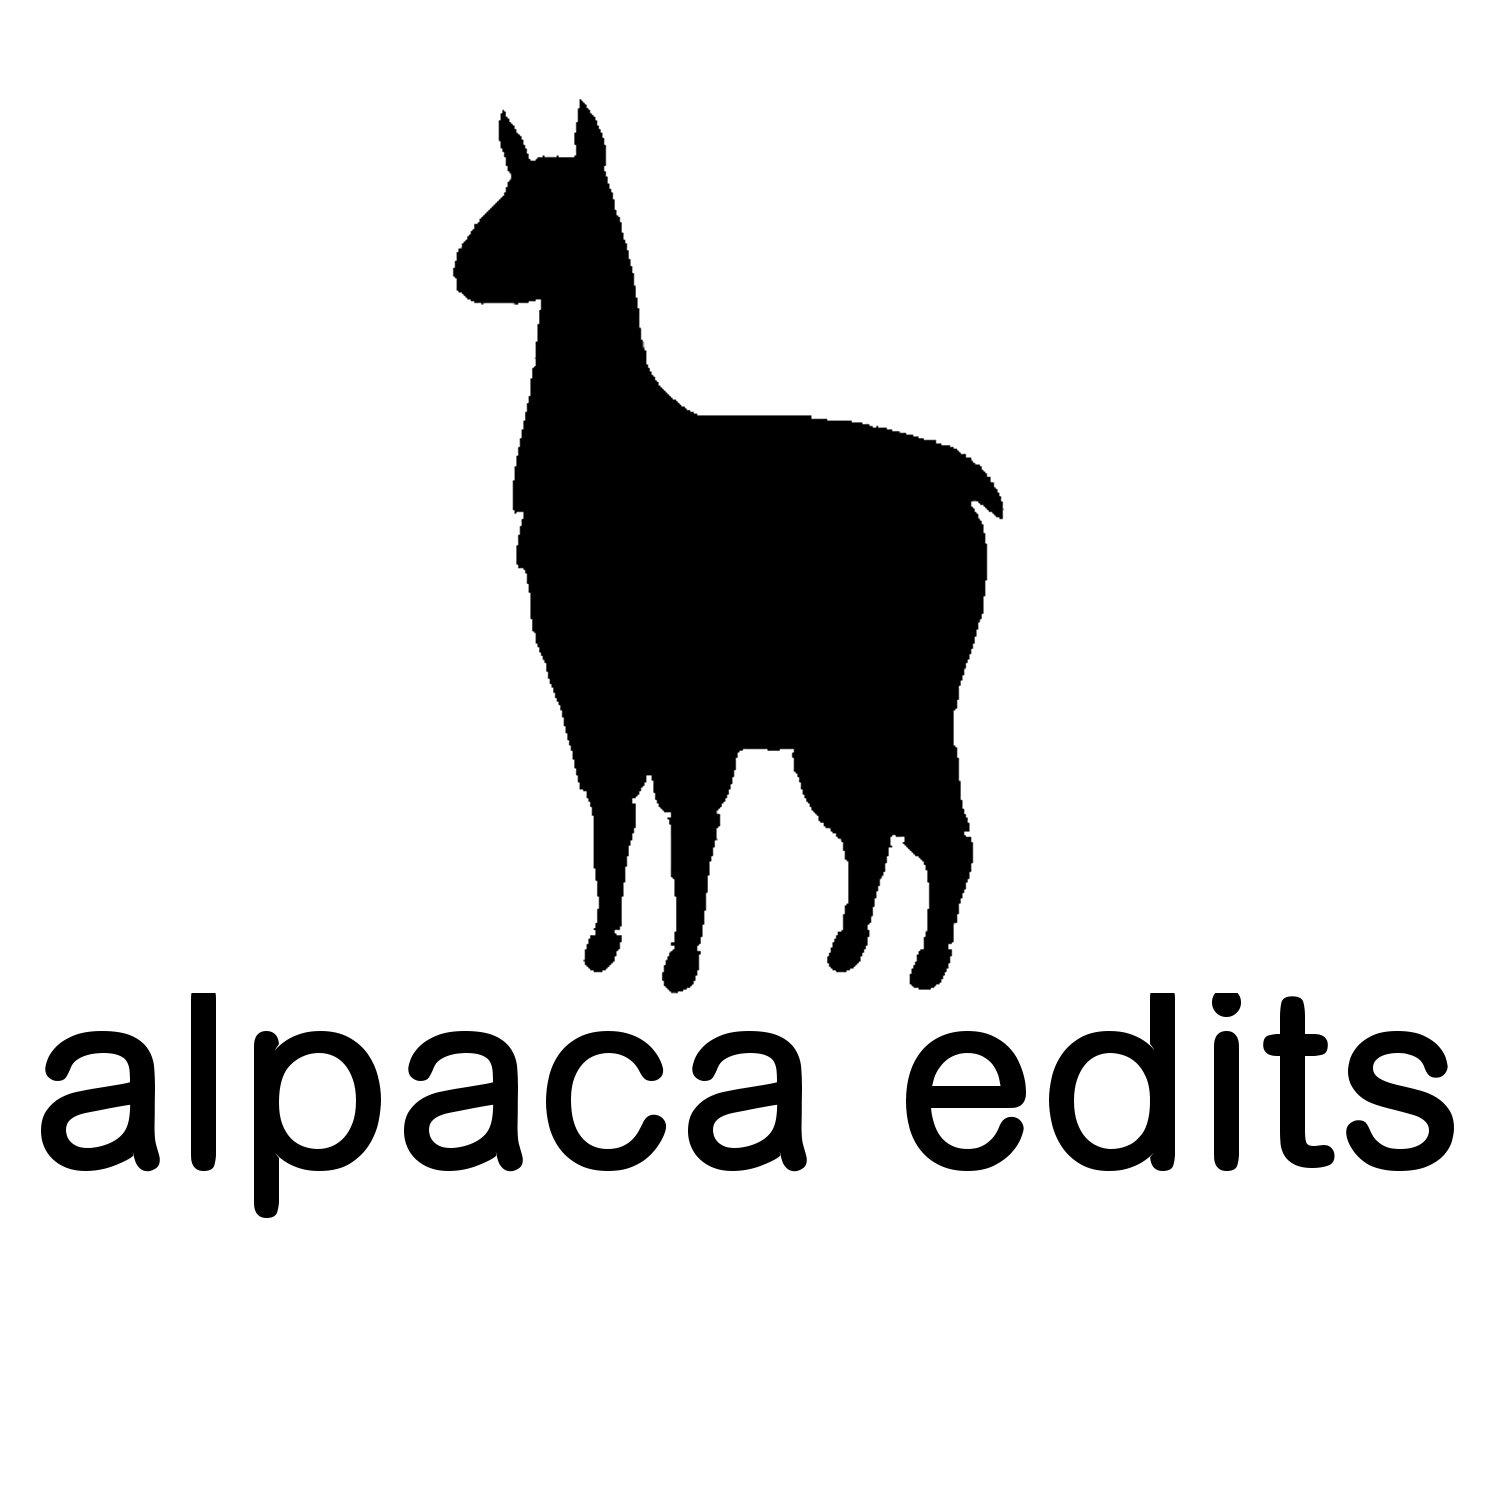 Camel llama guanaco alpaca breeds icon set animal Vector Image